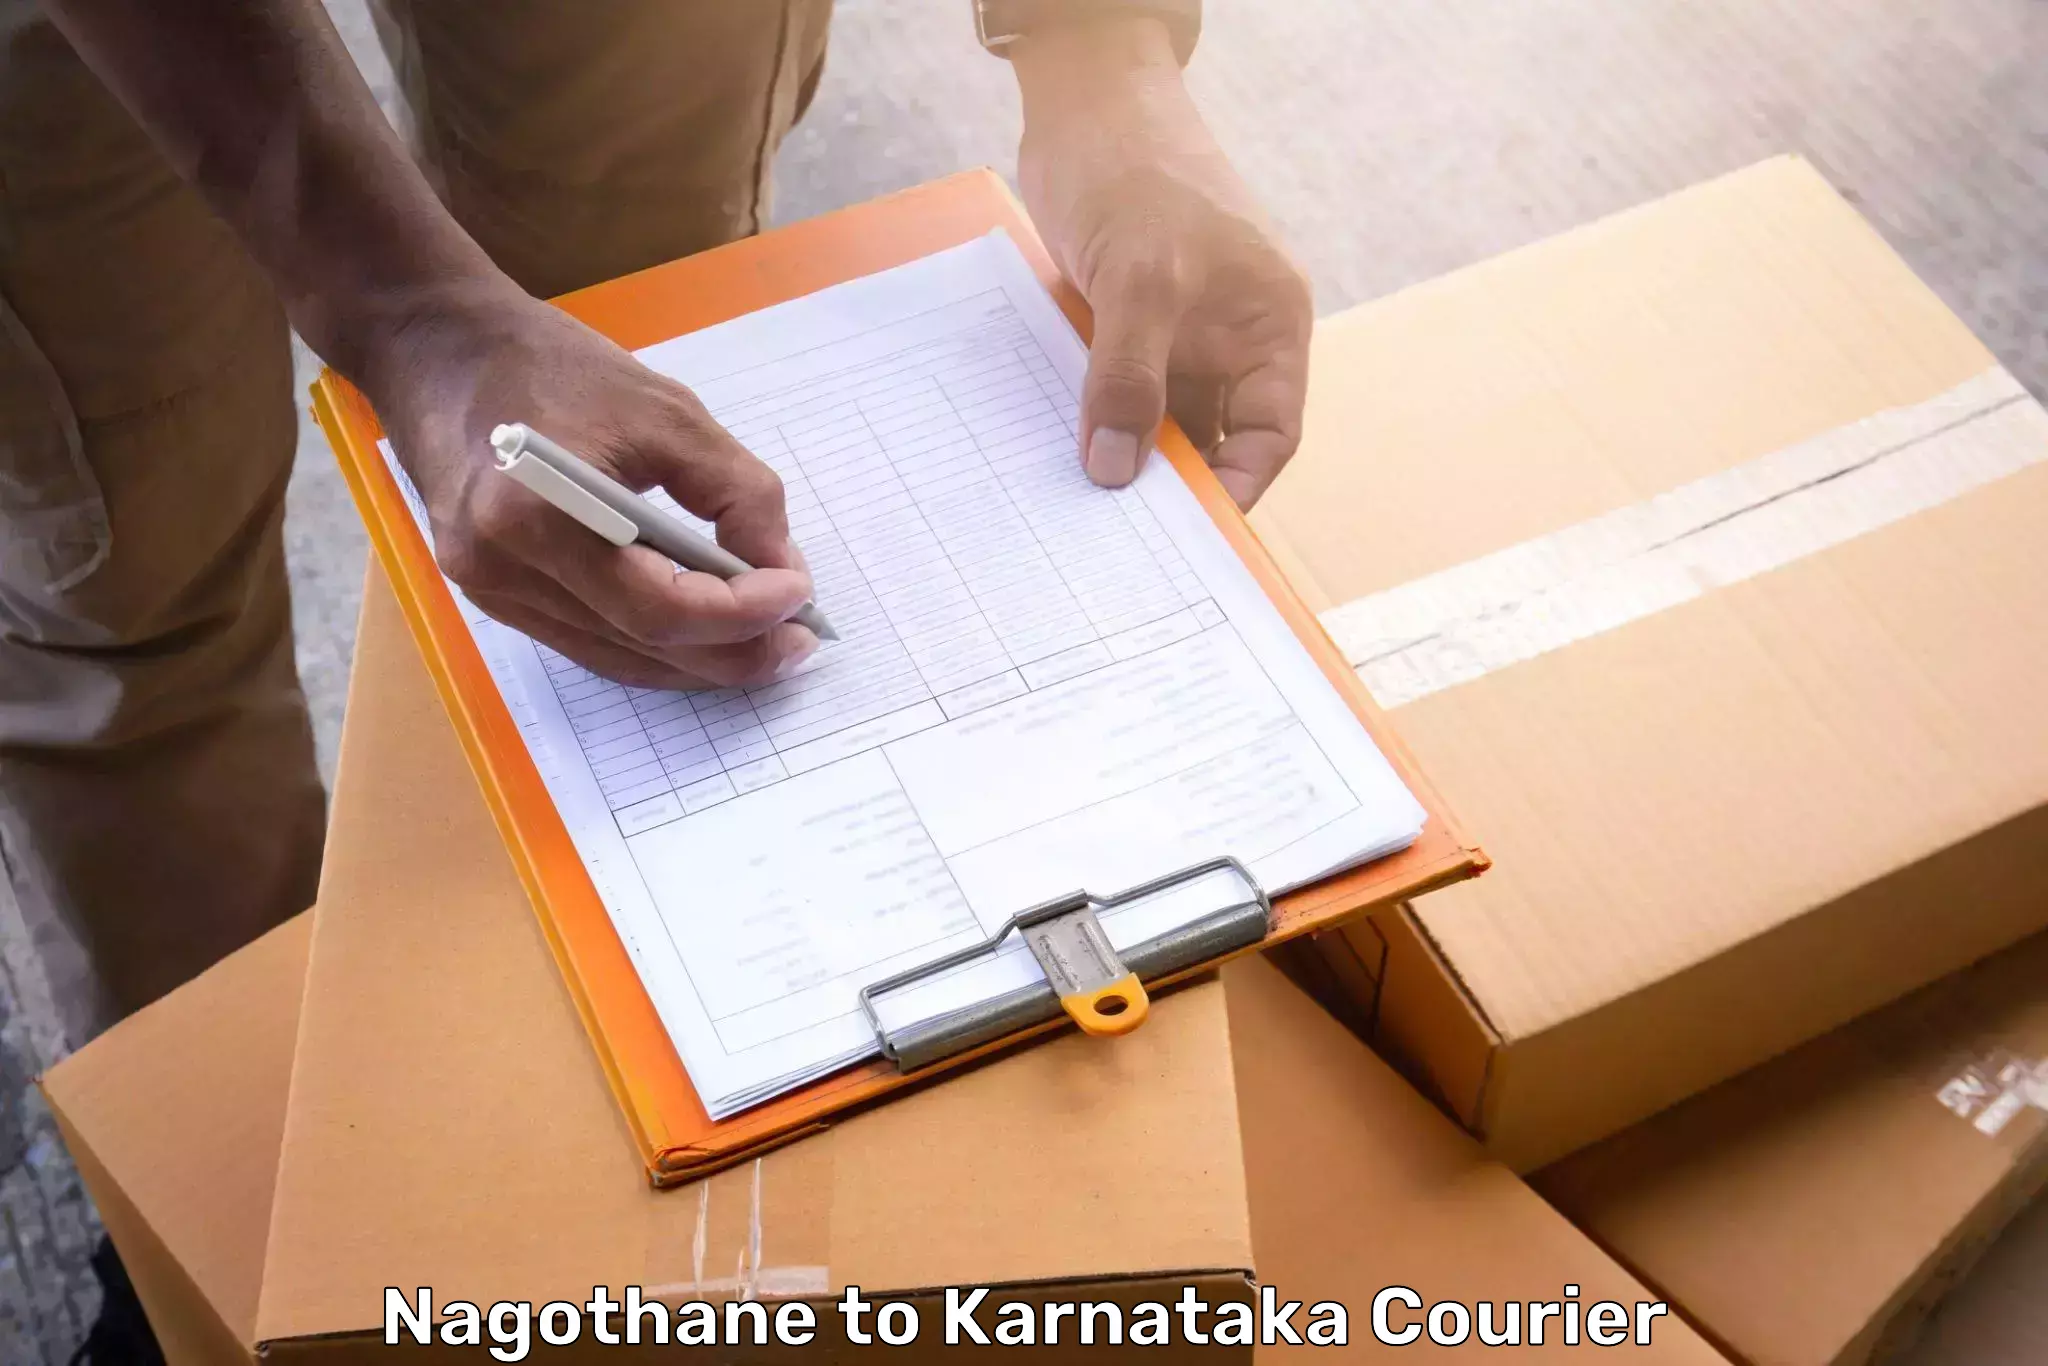 Baggage transport technology Nagothane to Karnataka